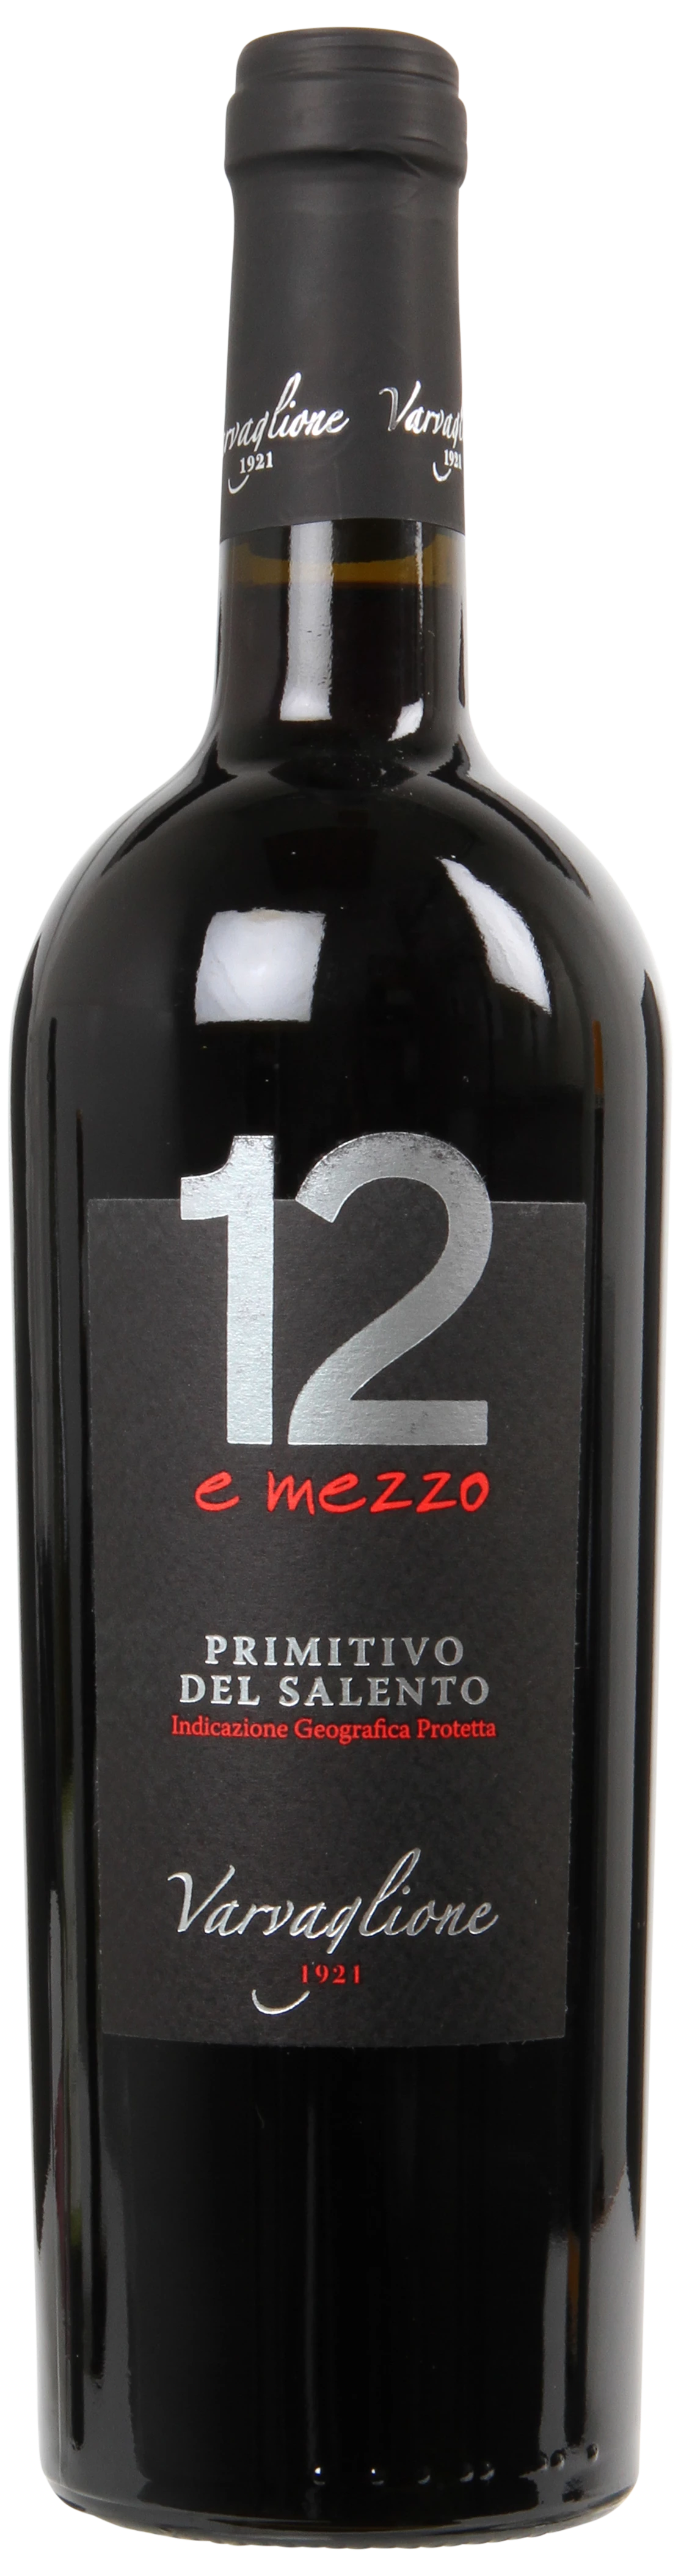 Varvaglione Vigne & Vini 12 e Mezzo Primitivo del Salento 2017 - 213196